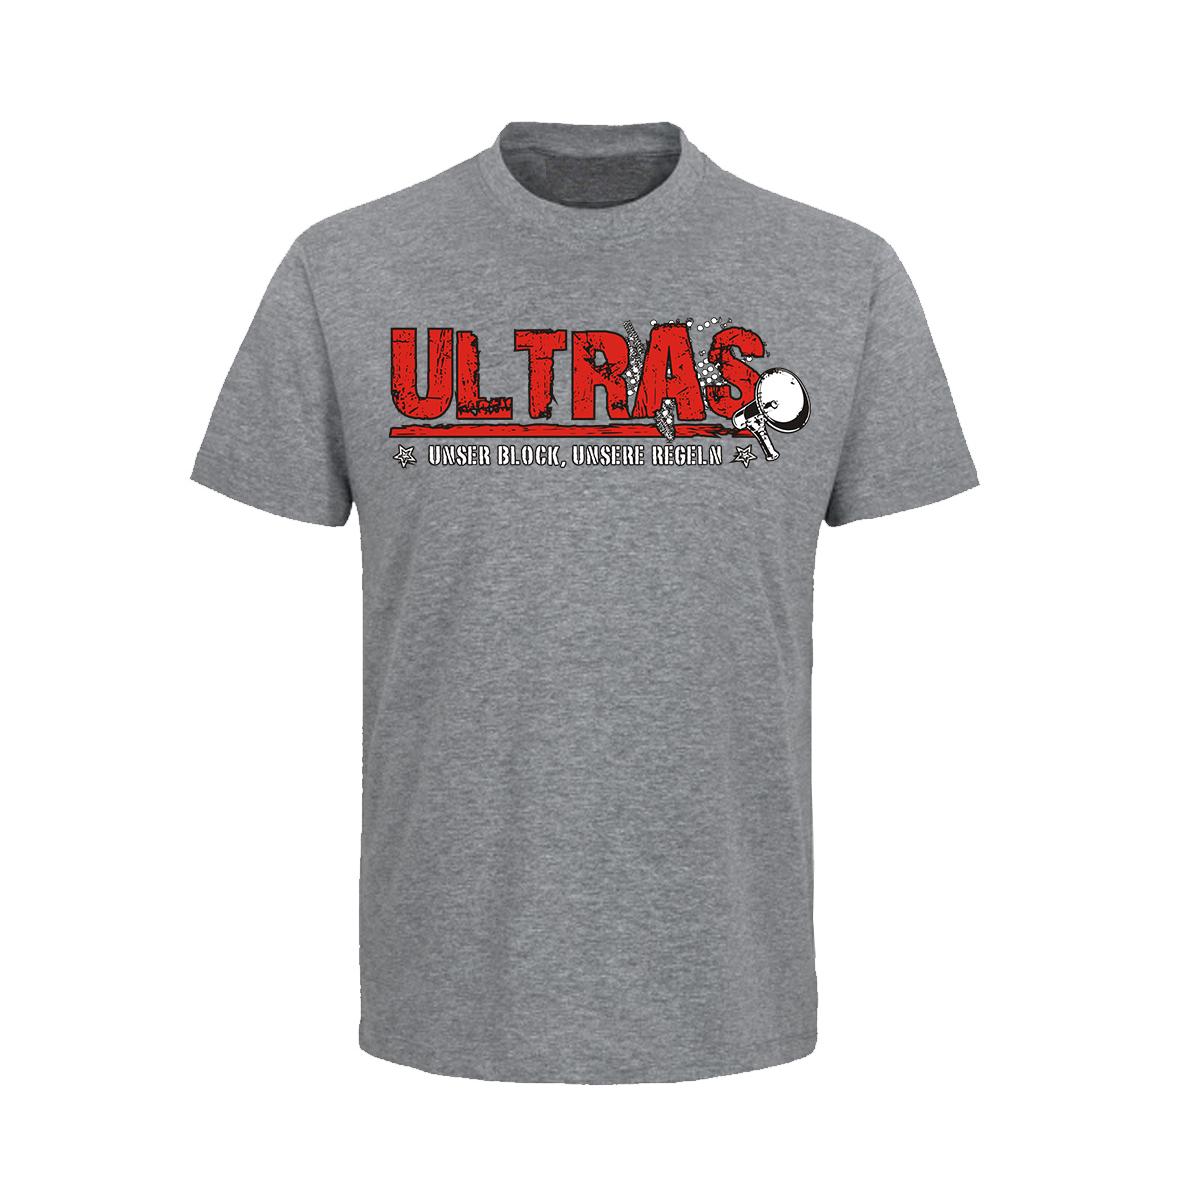 Ultras - Unser Block unsere Regeln - Männer T-Shirt - grau-meliert